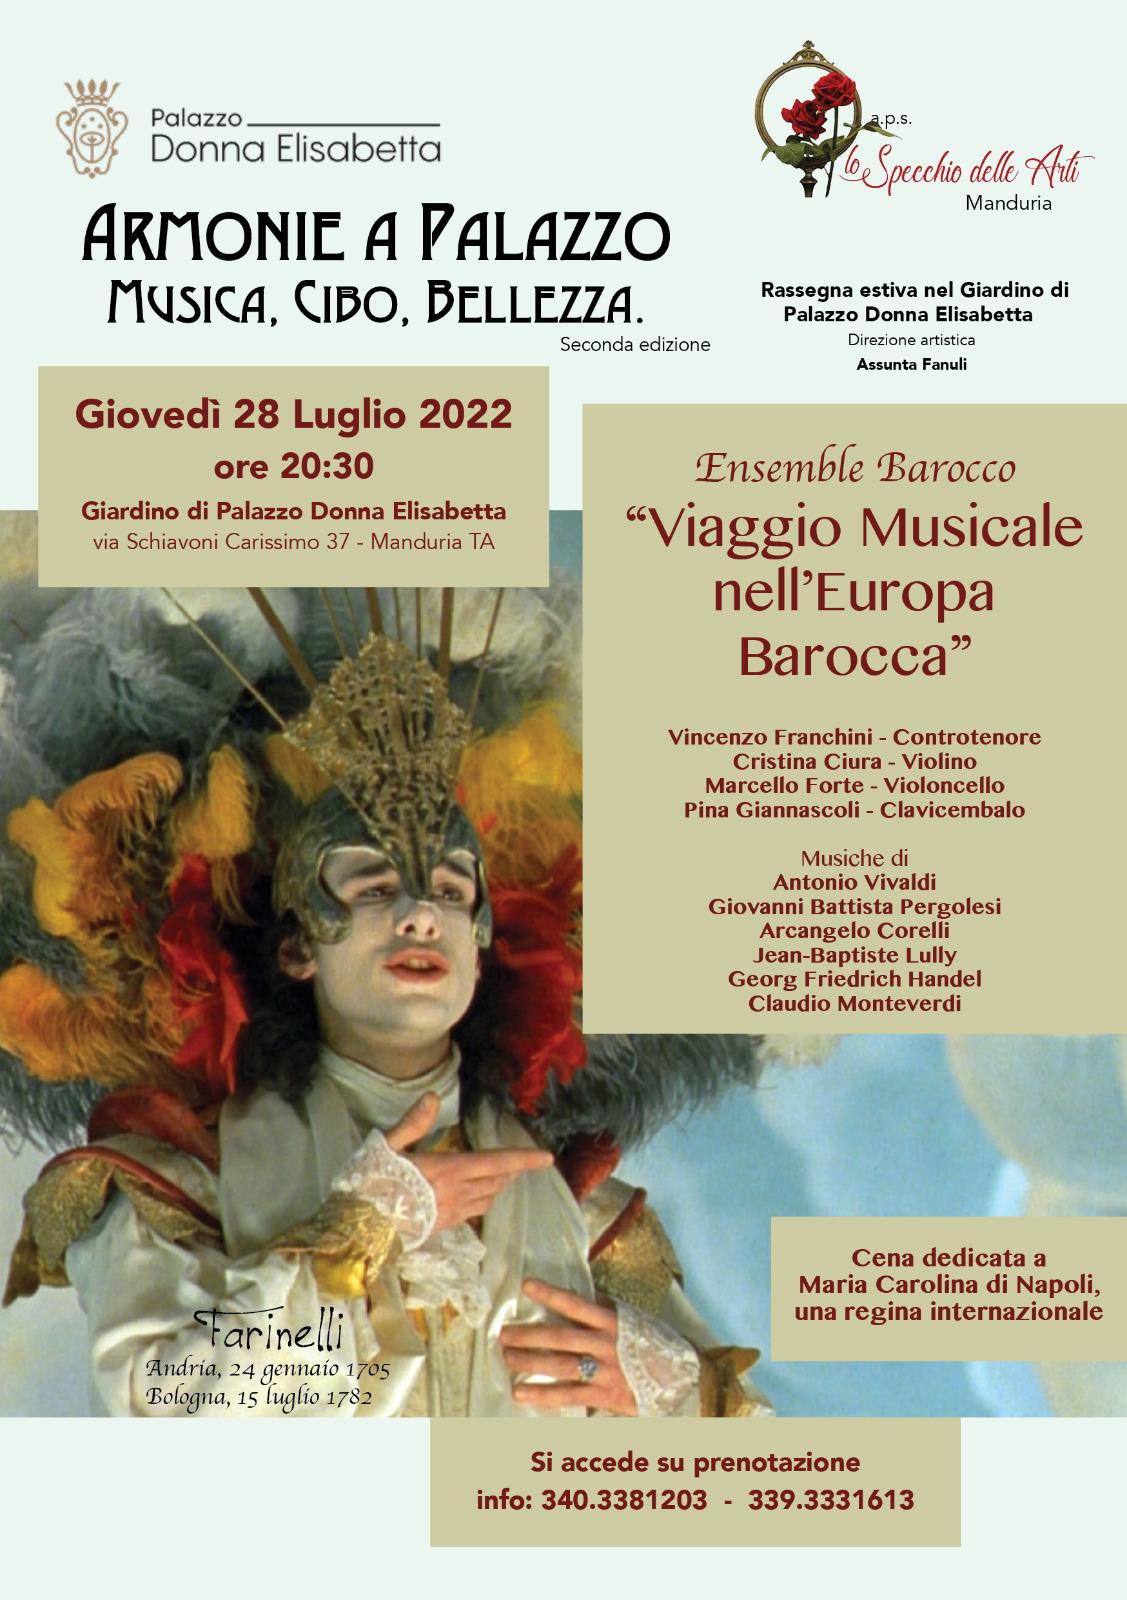 MANDURIA. Concerto del controtenore Vincenzo Franchini con “Viaggio Musicale nell’Europa Barocca”